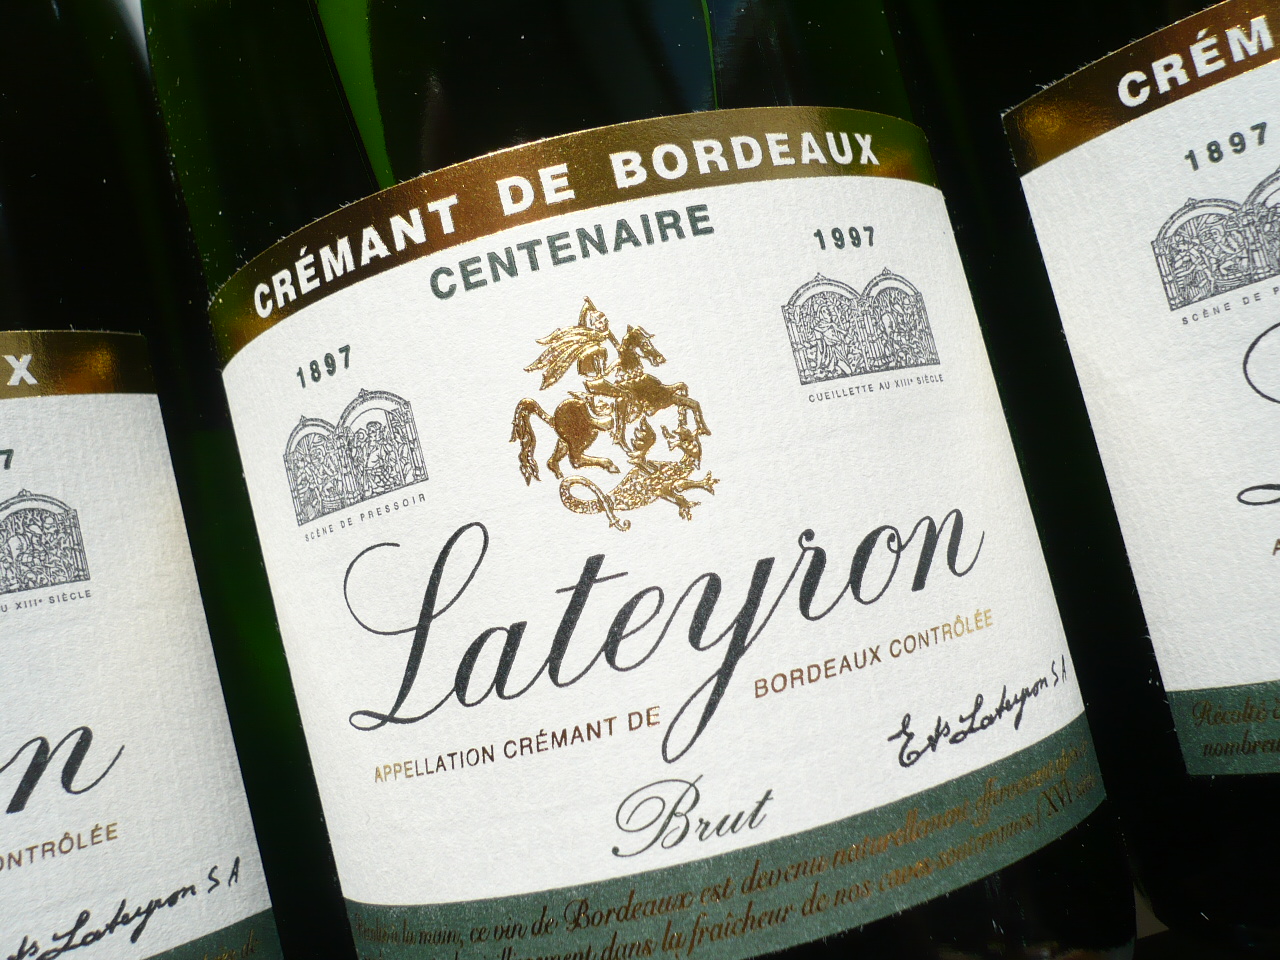 CRÉMANT DE BORDEAUX “Lateyron” brut AOP -0,75l- – Weinhandel im Fedelhören